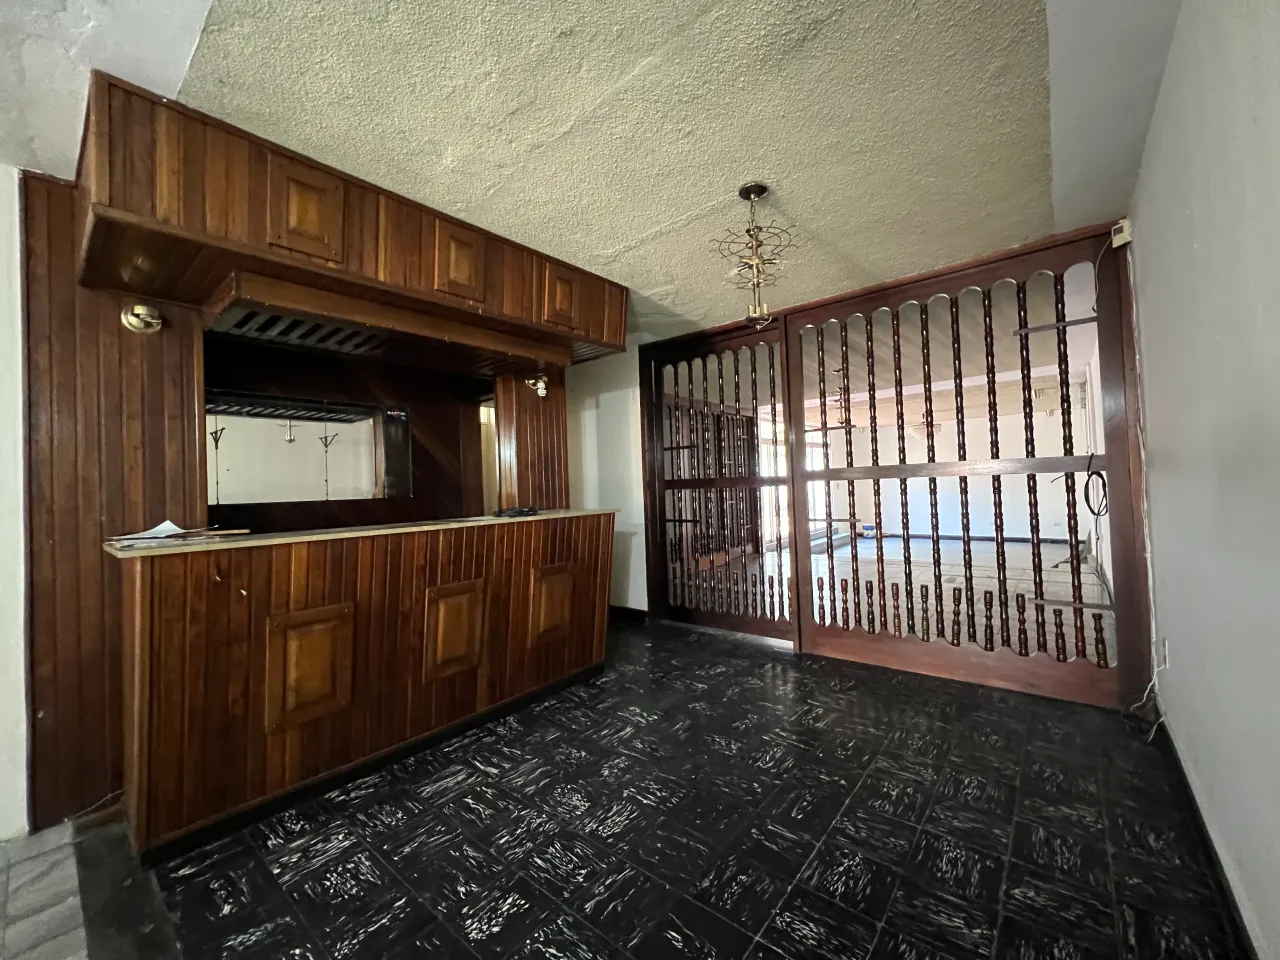 Habitación con un área de bar de madera color cafe oscuro, con acceso a la sala principal.